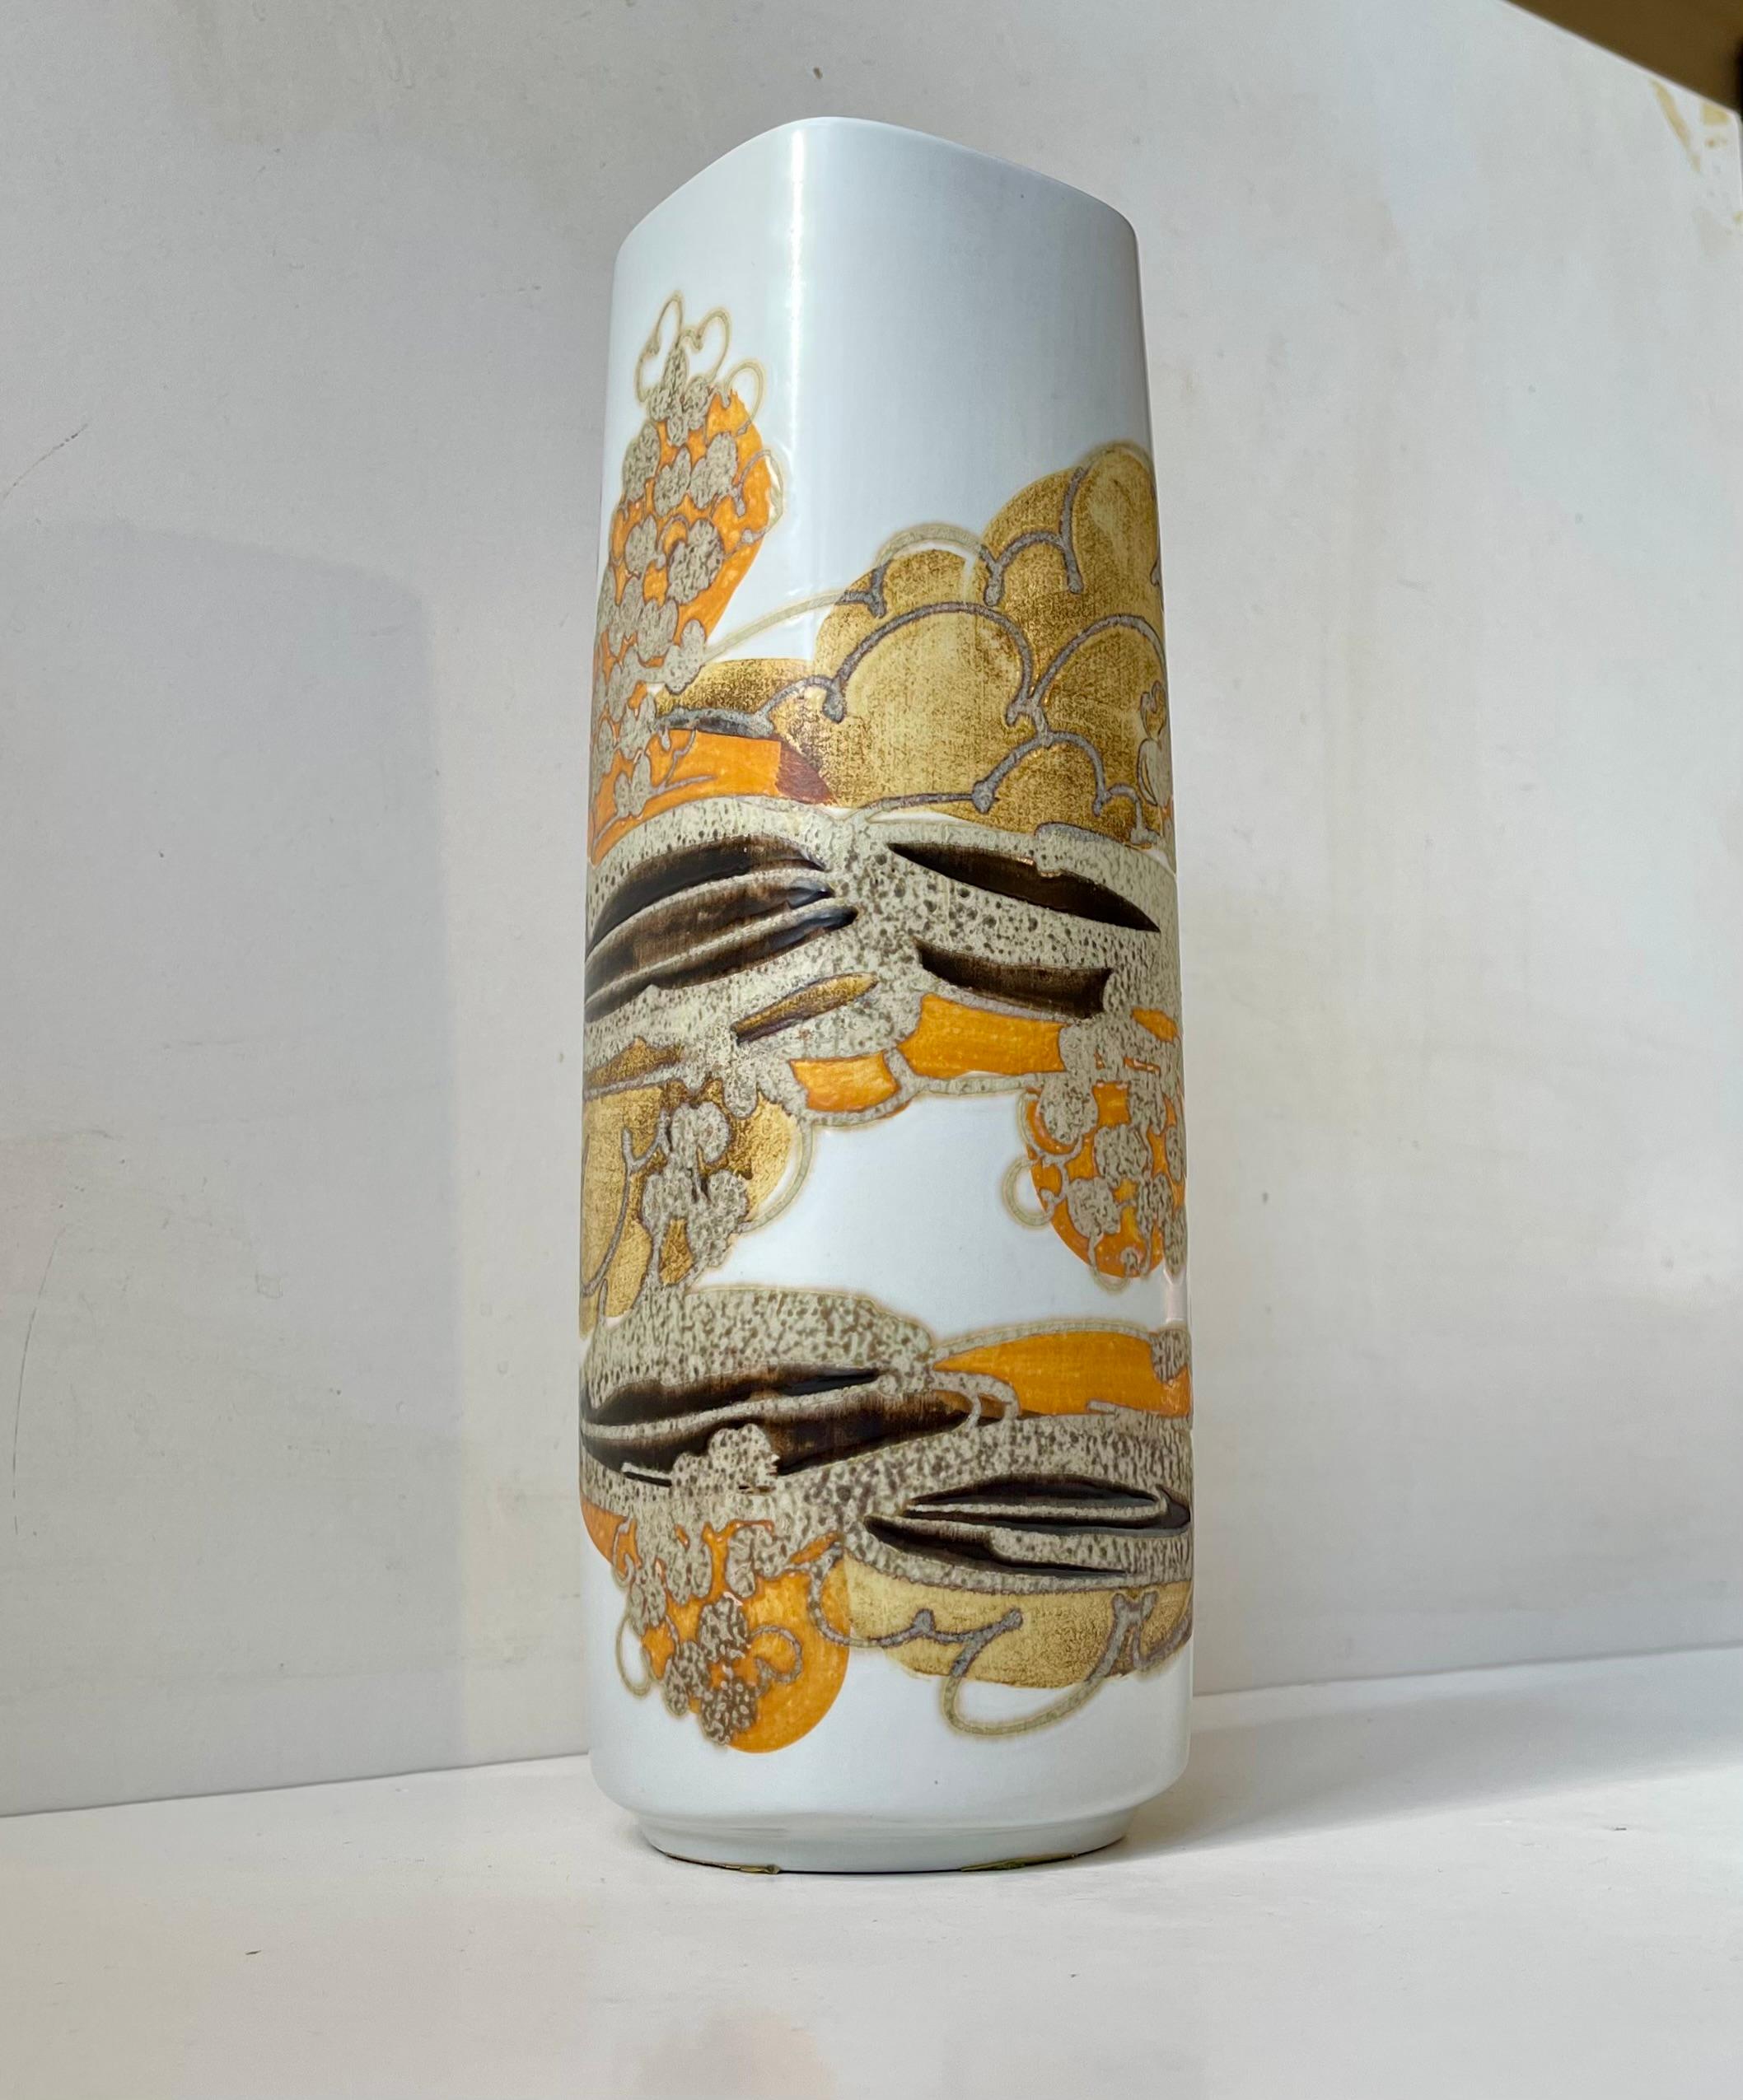 Eine hohe Fajance-Vase mit abstrakt-modernistischem Glasurmotiv in kontrastreichen, erdigen Glasuren. Entworfen von der dänischen Keramikerin Ellen Malmer (EM) und hergestellt von Royal Copenhagen in den 1970er Jahren. Es ist vollständig signiert,